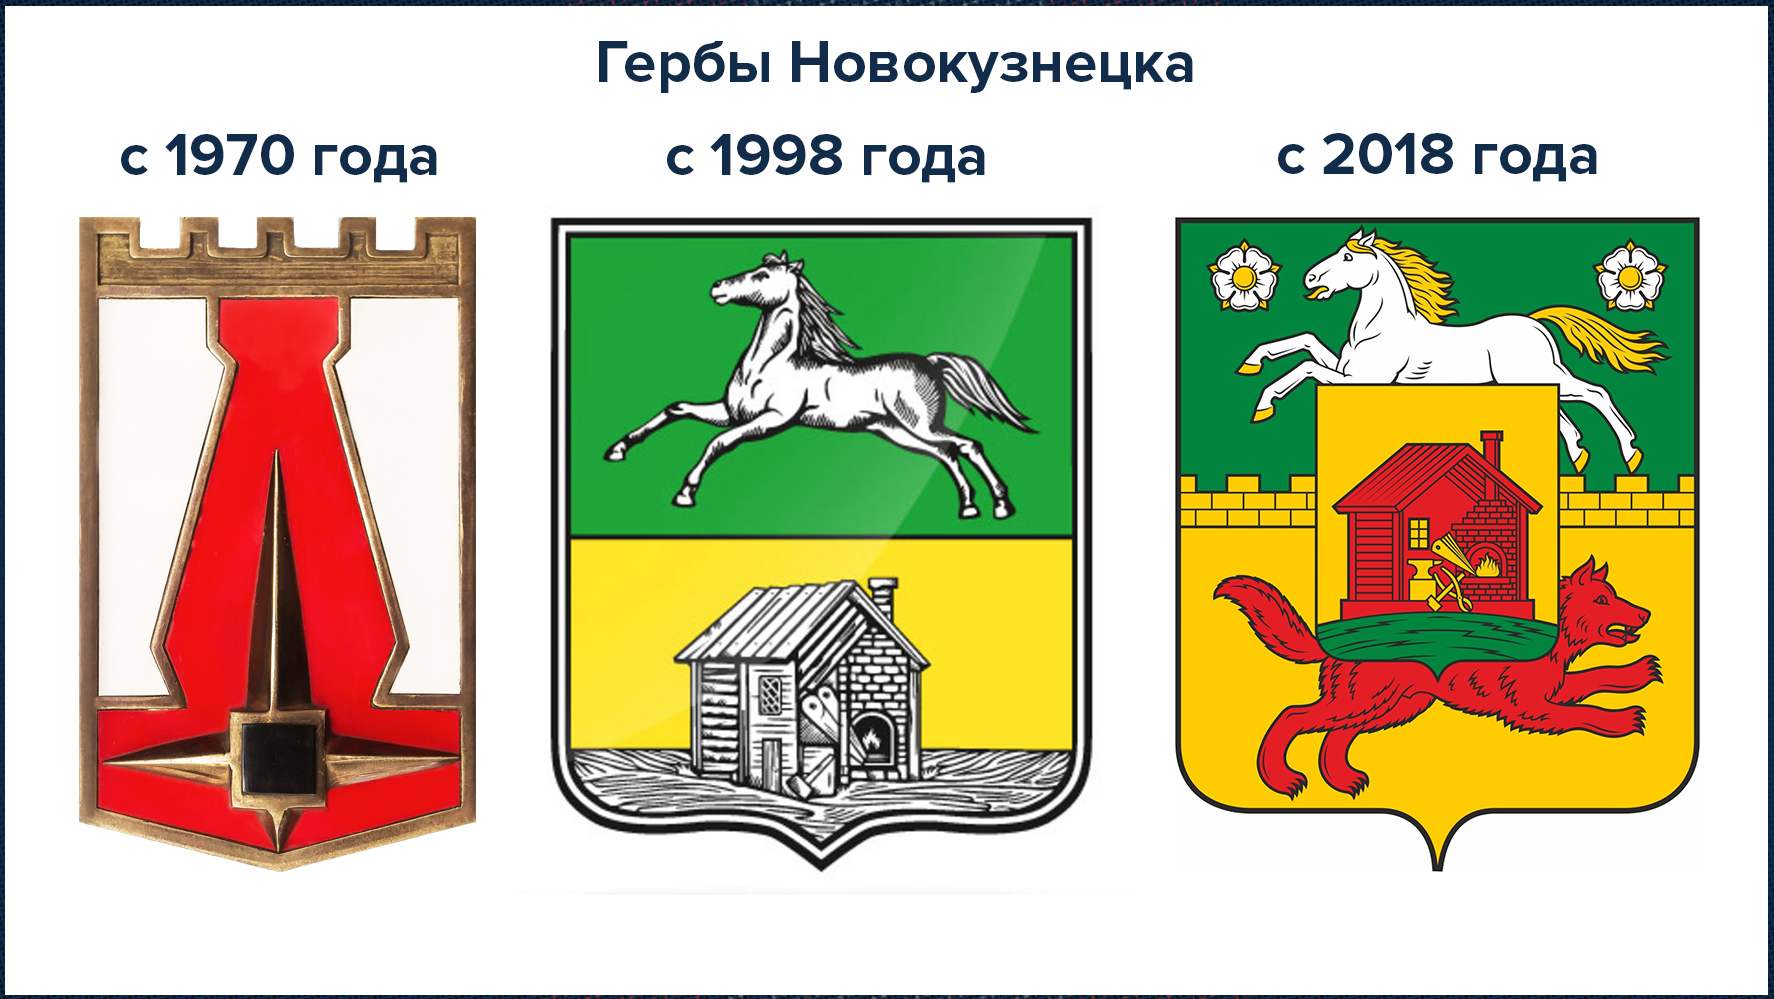 Герб и флаг Новокузнецка